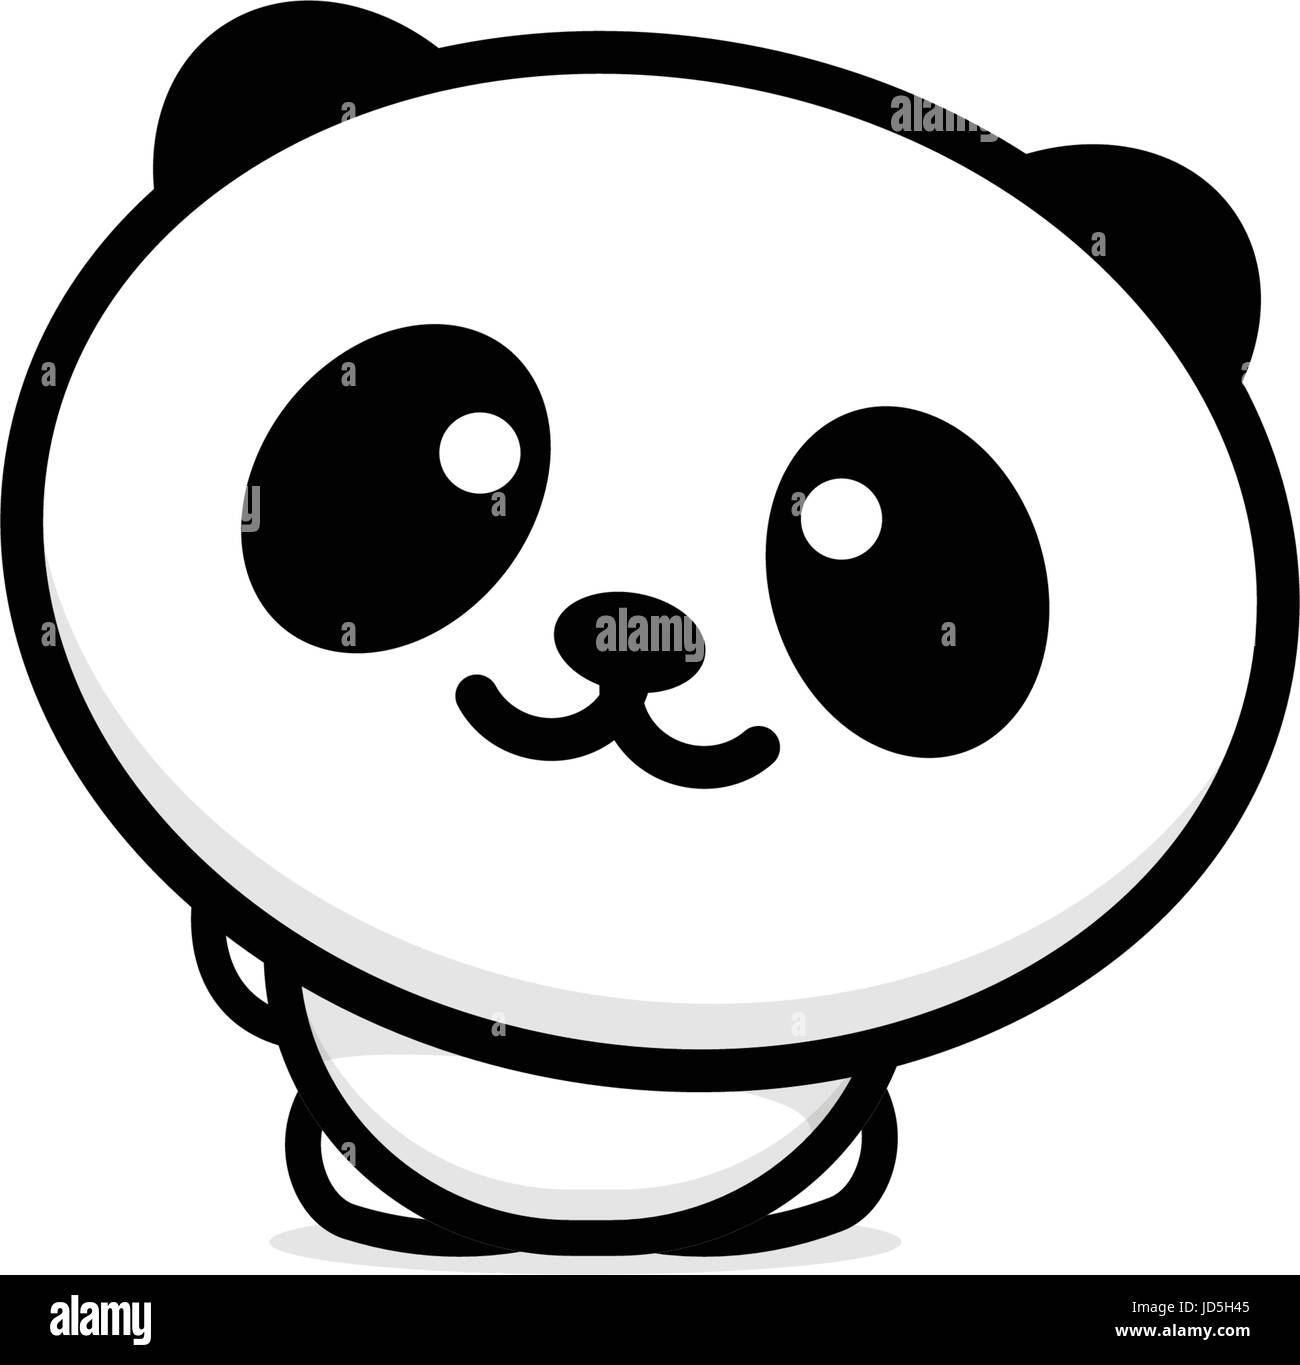 Grazioso Panda accoglie agitando la mano illustrazione vettoriale, baby orso logo, la nuova linea di design, arte cinese di Teddy bear colore nero segno, semplice immagine, pictu Illustrazione Vettoriale